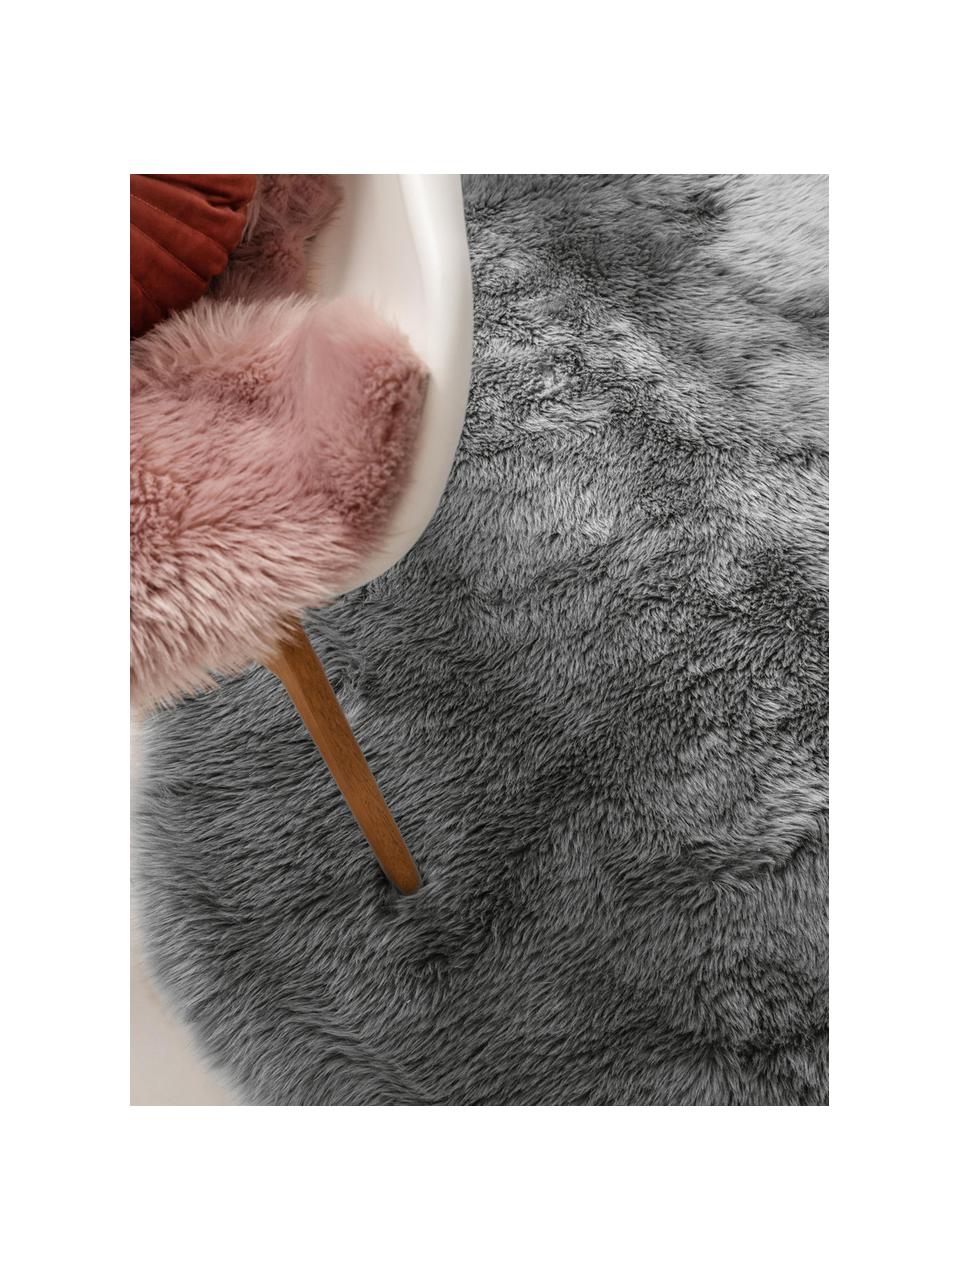 Flauschiger Kunstfell-Teppich Elmo in Grau, glatt, Flor: 50% Acryl, 50% Polyester, Grau, B 140 x L 200 cm (Größe S)